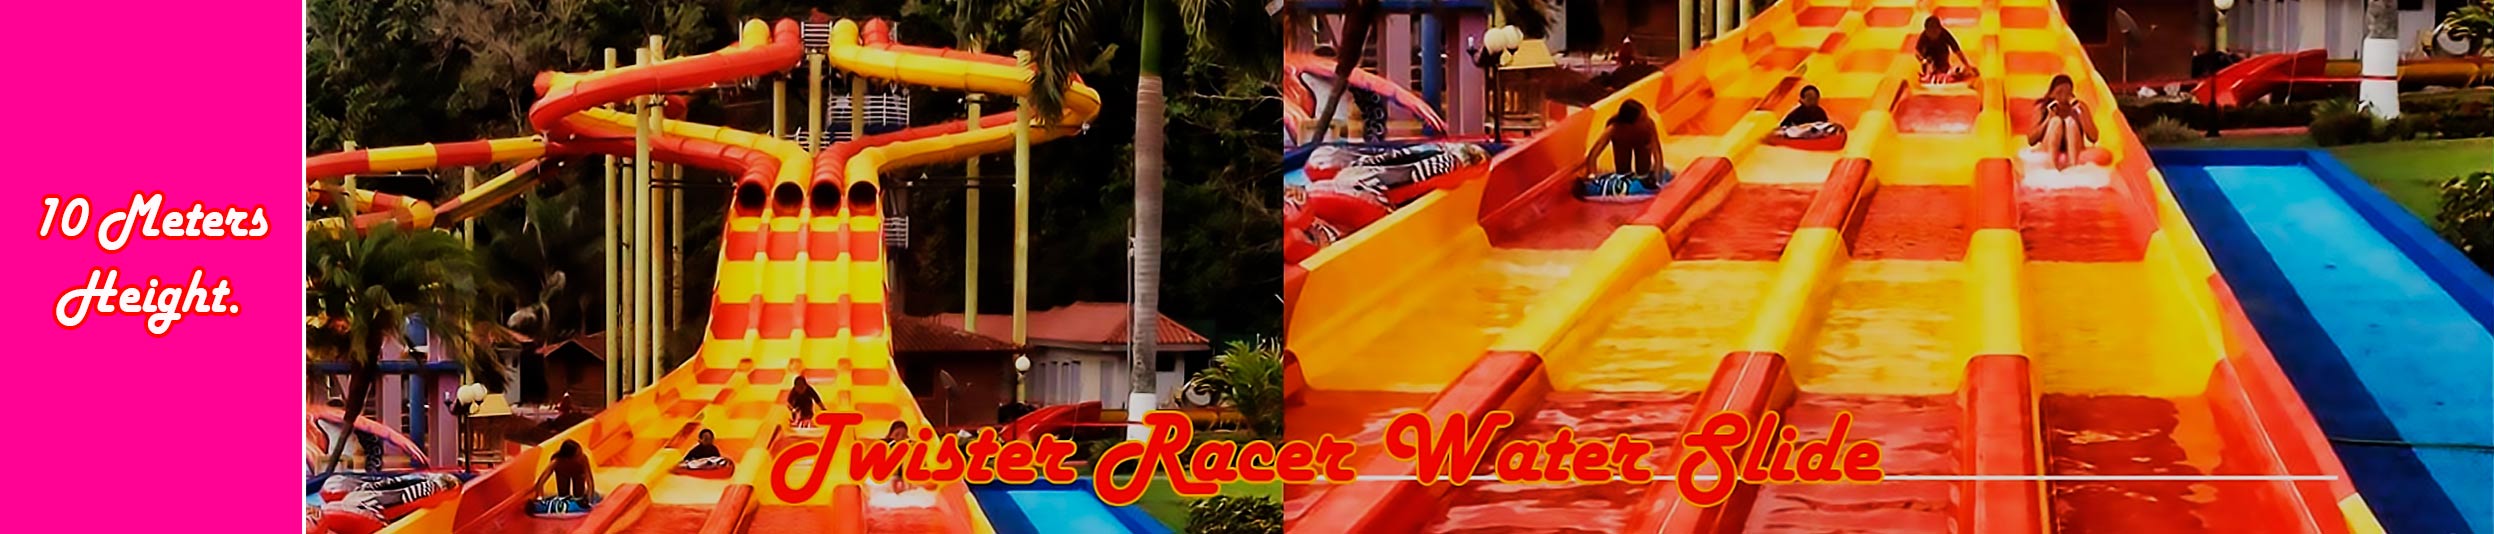 Twister-Racer-parque acuático-toboganes-acuaticos (1)